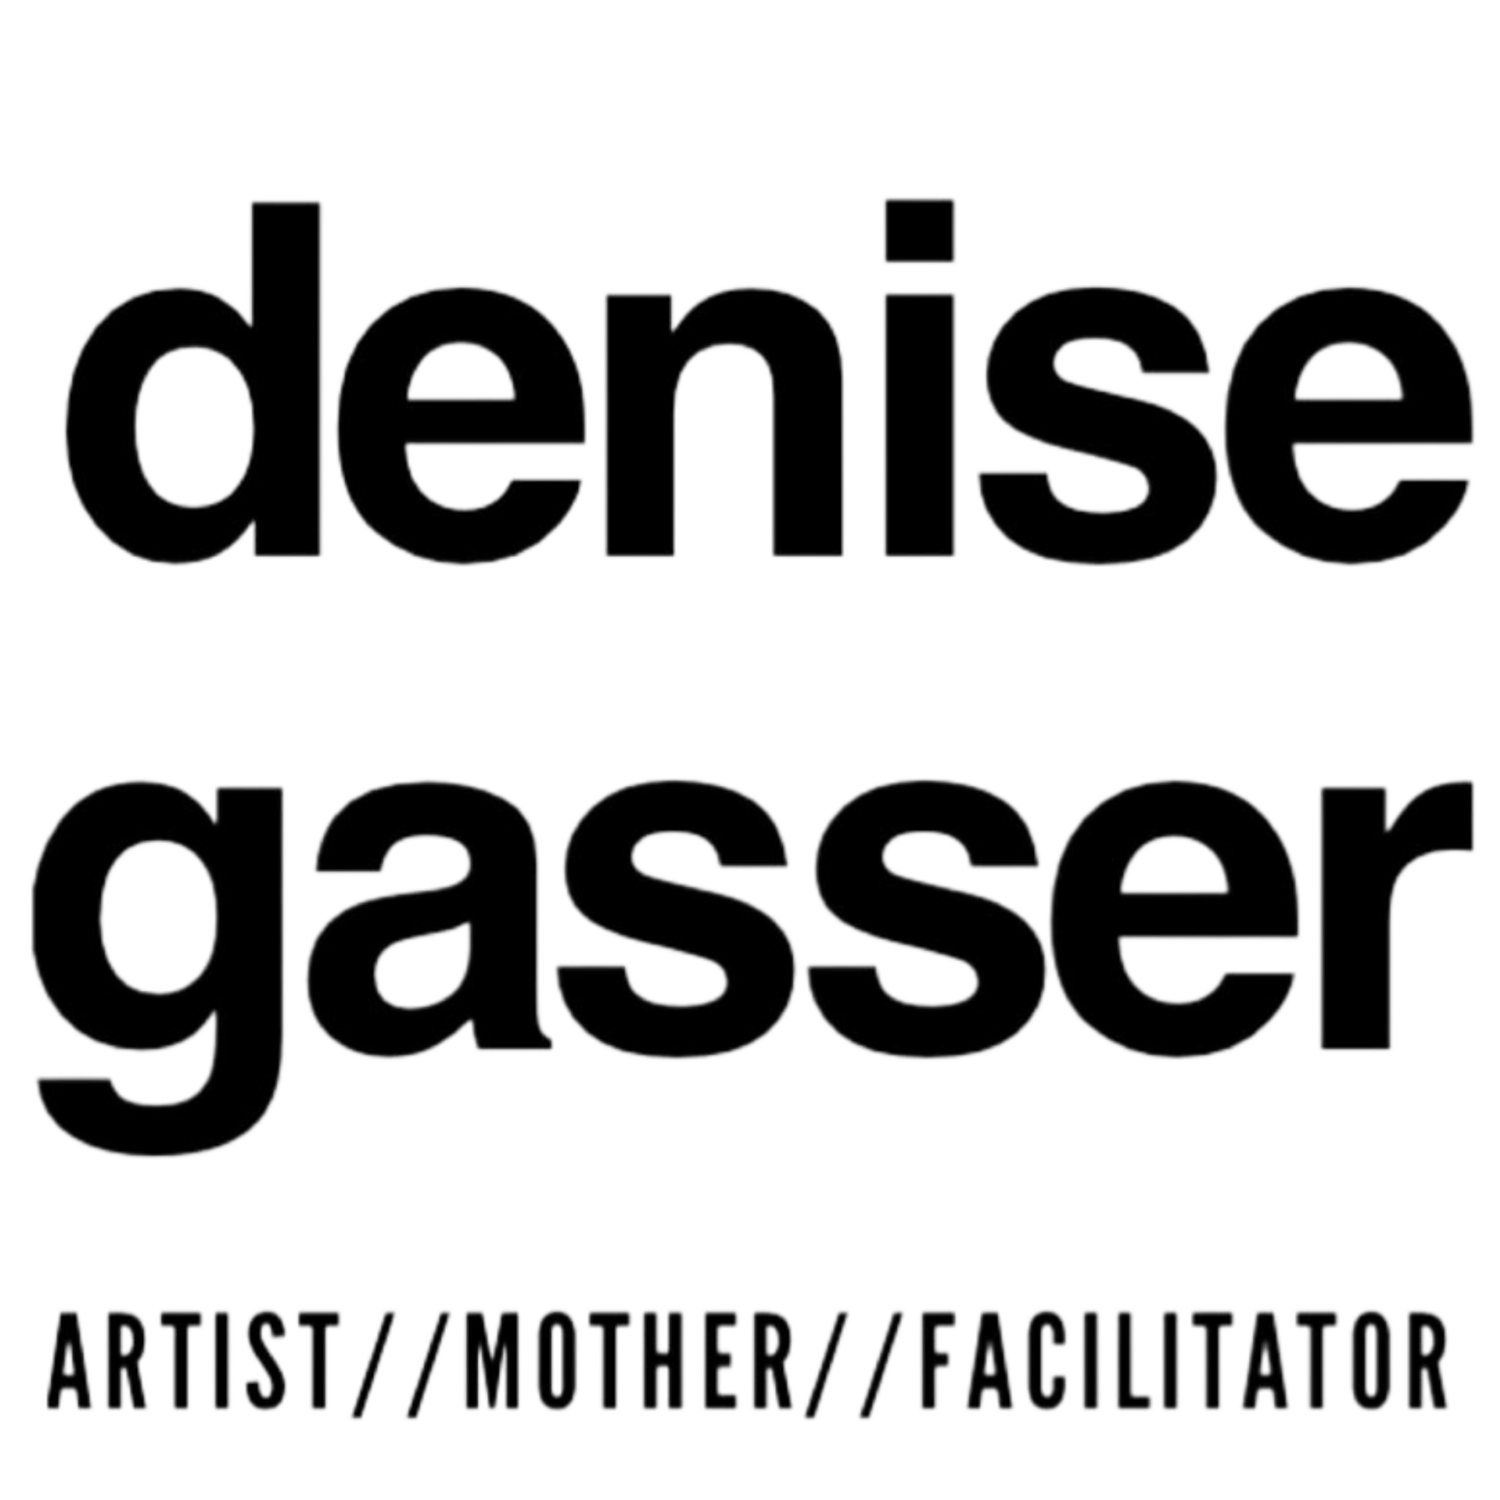 Denise Gasser Art